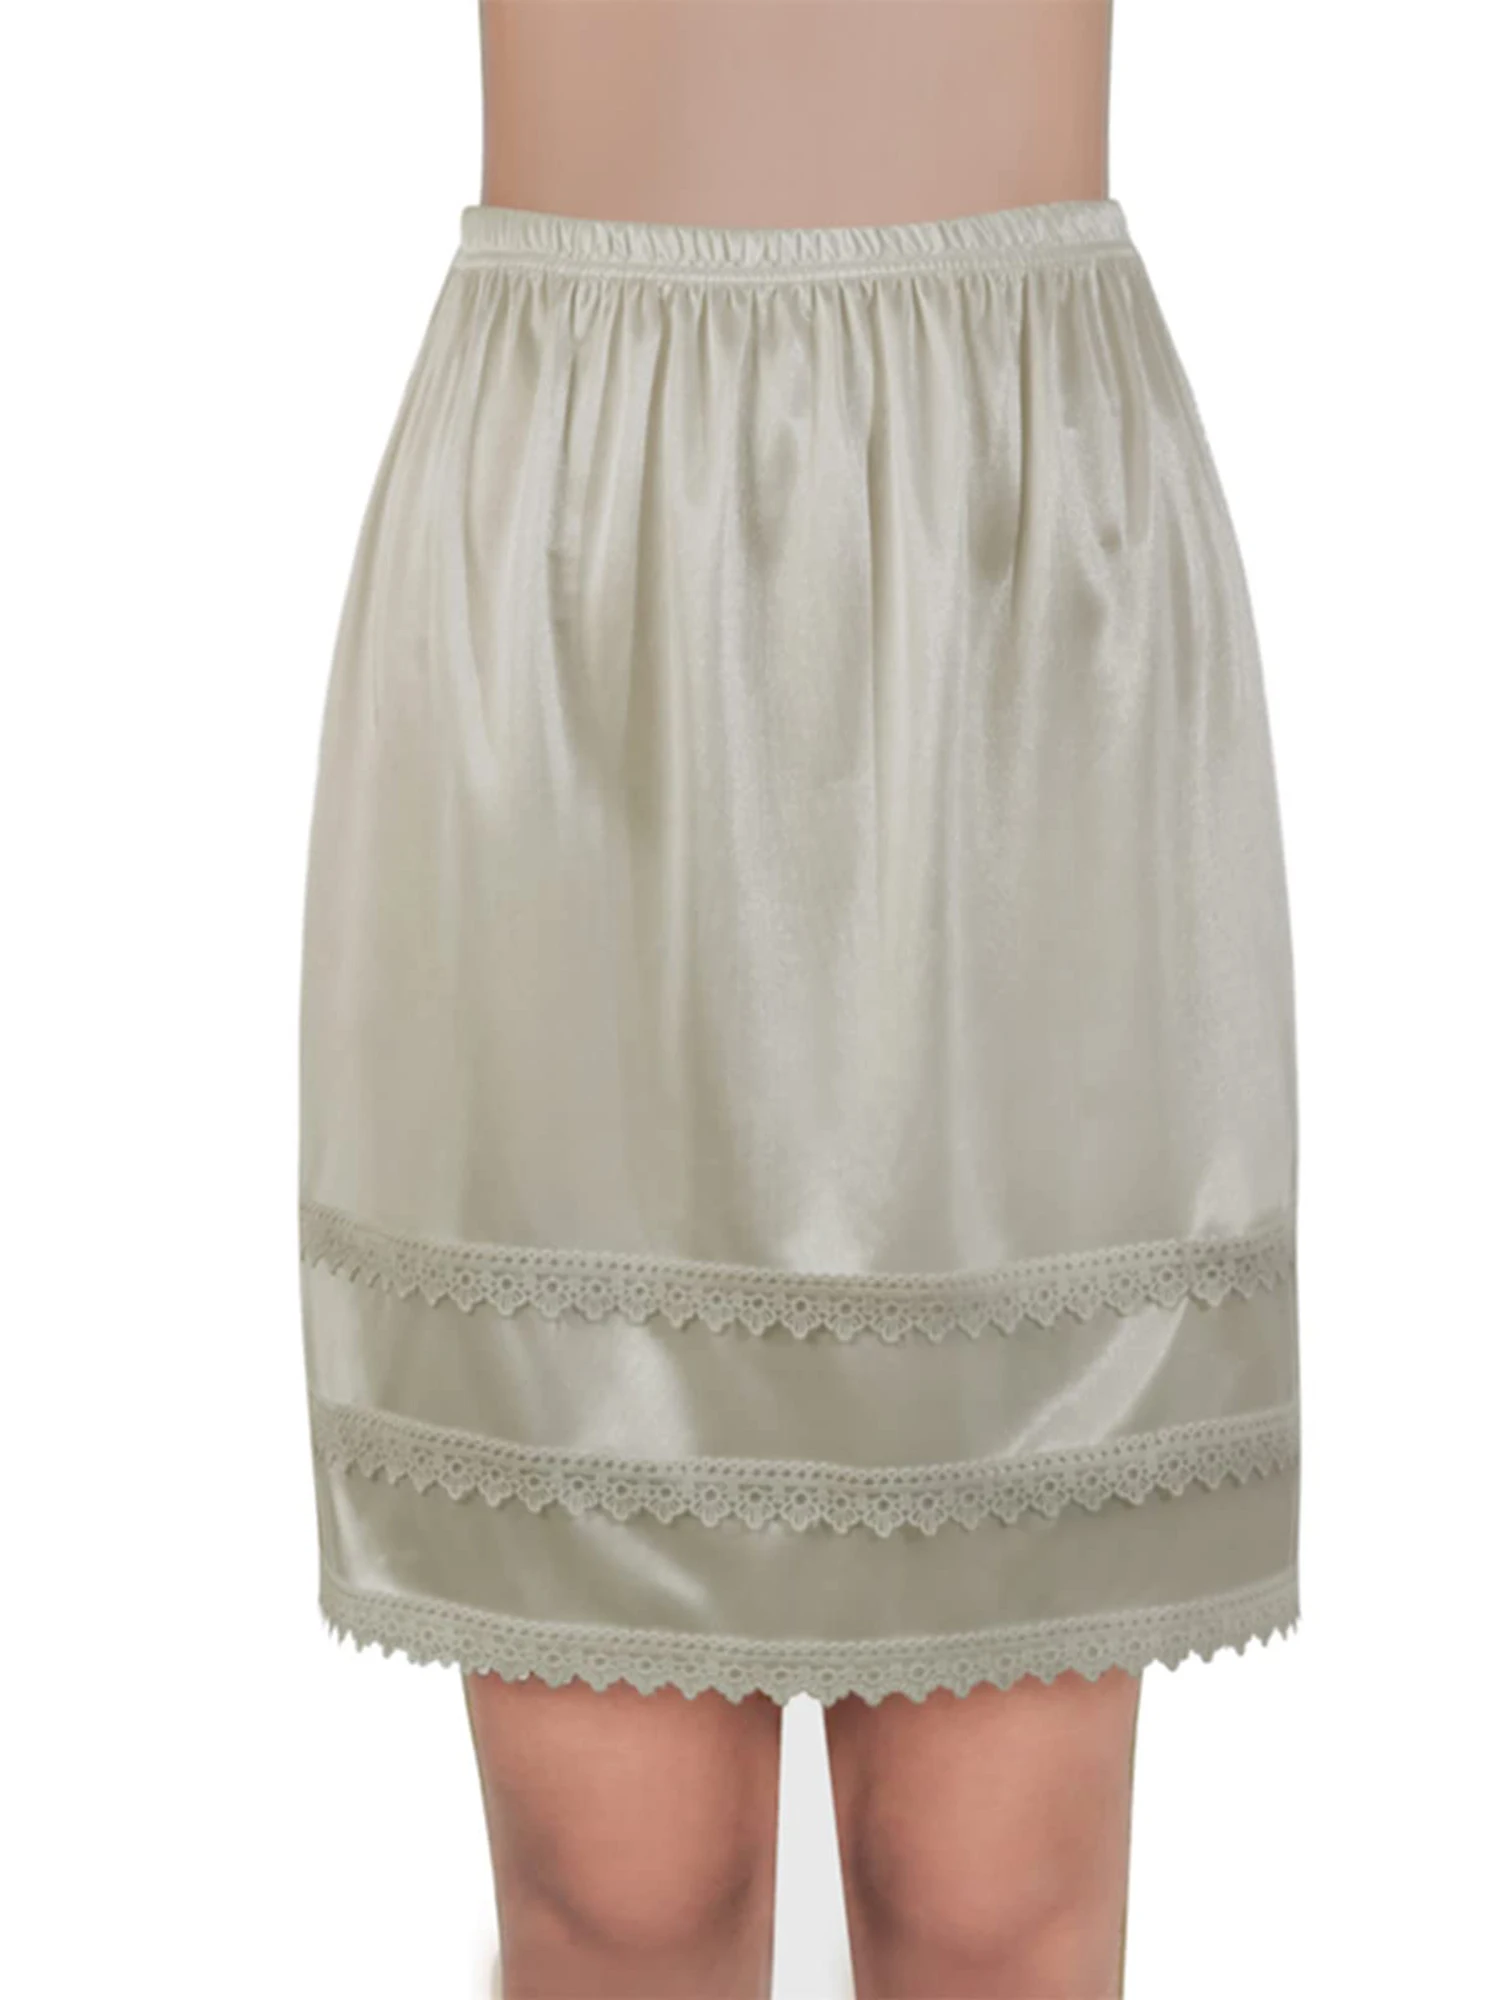 Women s Lace Trim Satin Half Slip Petticoat Elastic Waist Underskirt Extender for Dresses